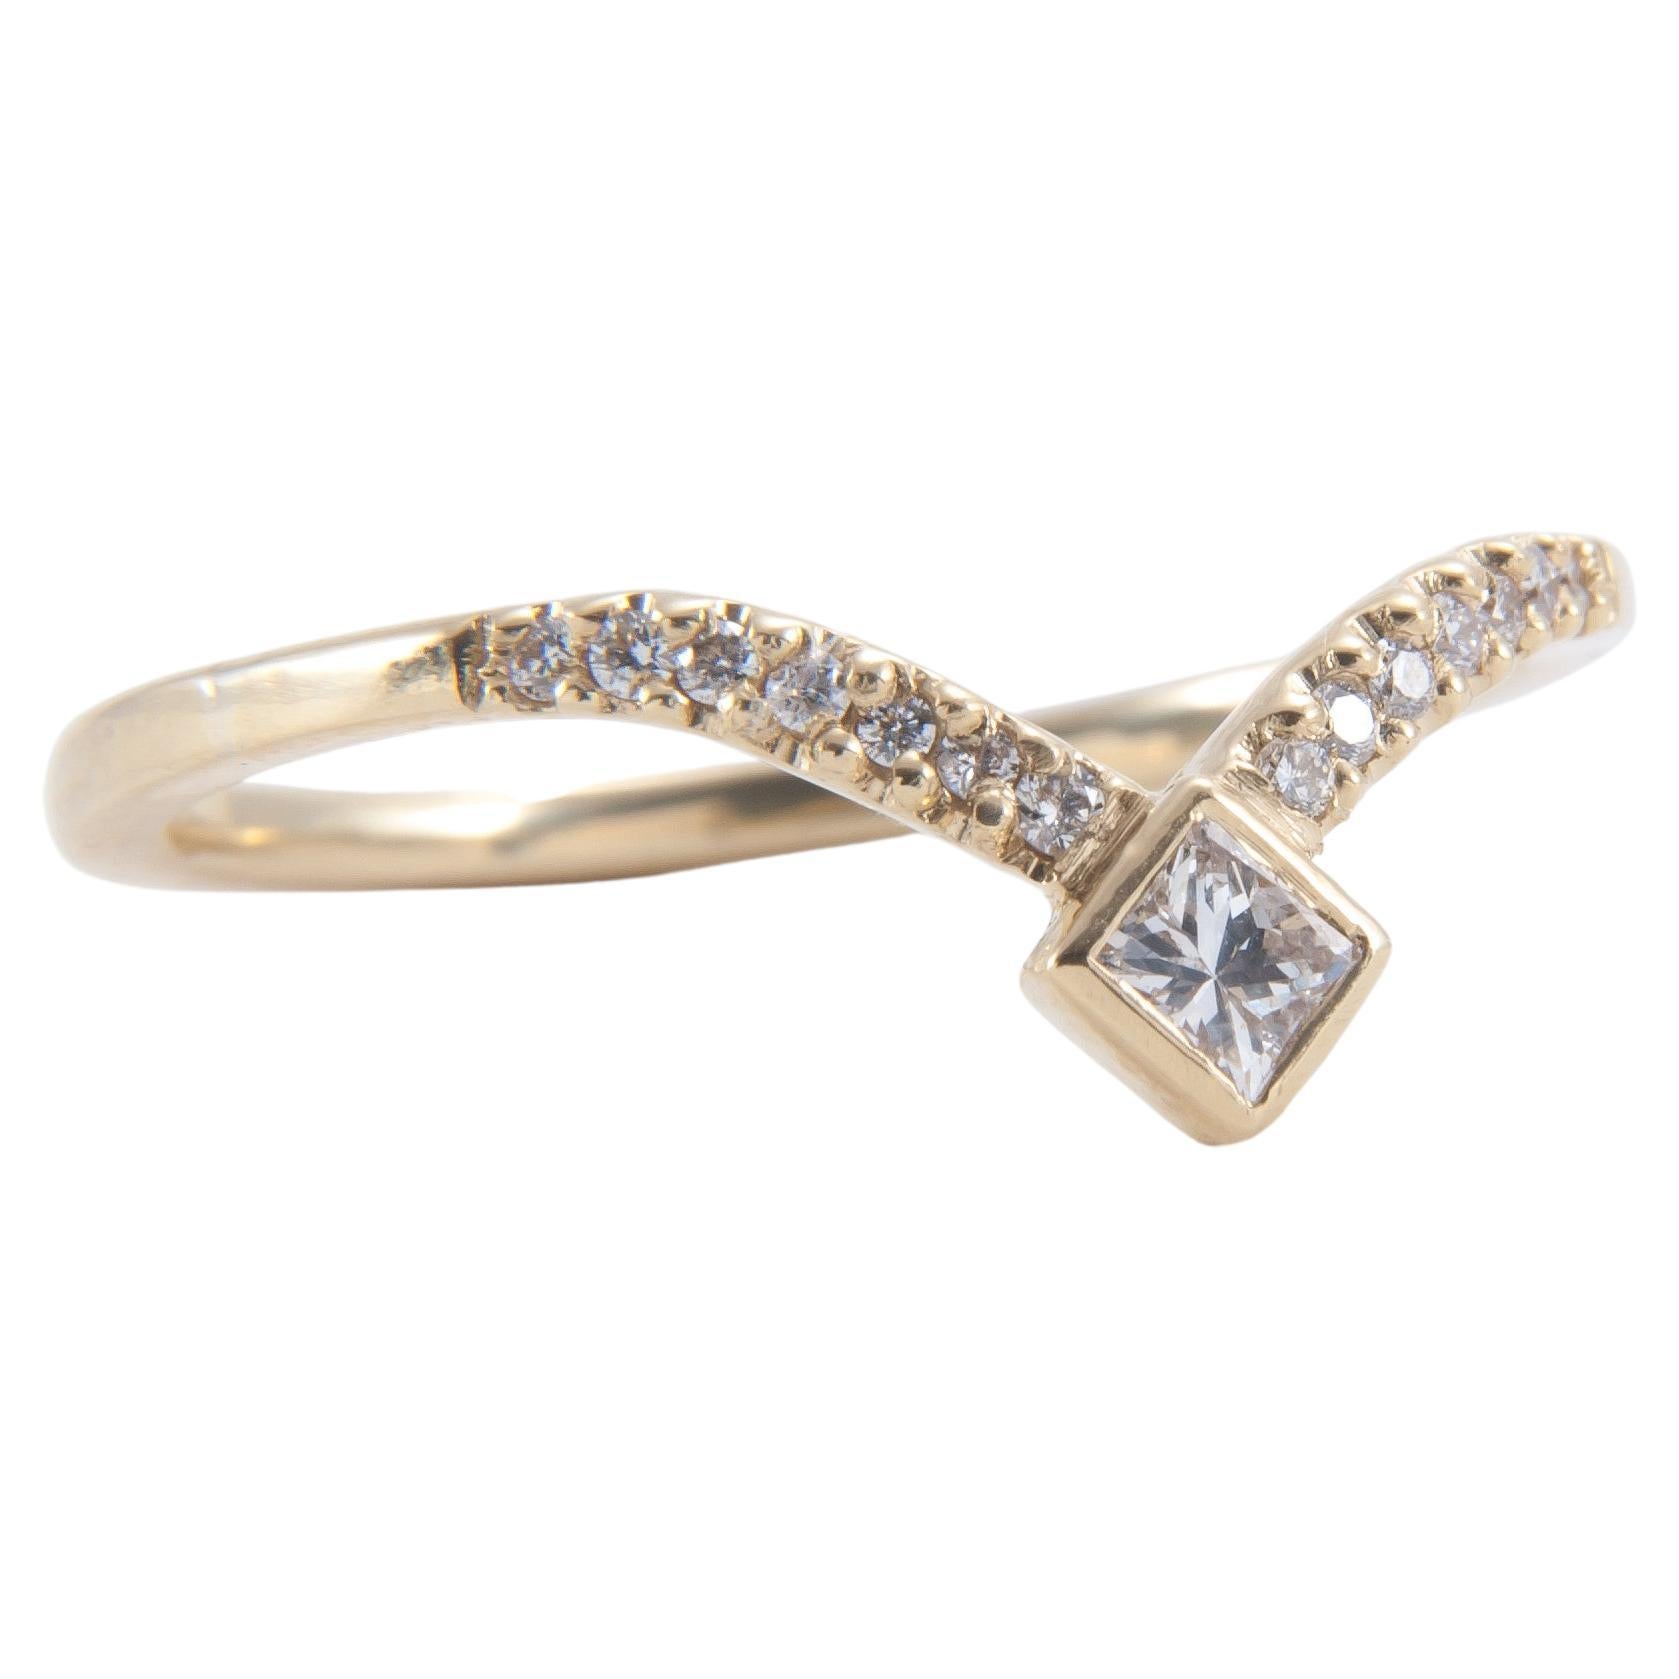 Das auffällige geometrische Design macht dieses Diamantband zu einem echten Hingucker und zu einer idealen Ergänzung für jede Ringkollektion.

18K Band
0,10 Karat Diamant im Prinzessschliff
umgeben von weißen Diamanten von insgesamt 0,07ct